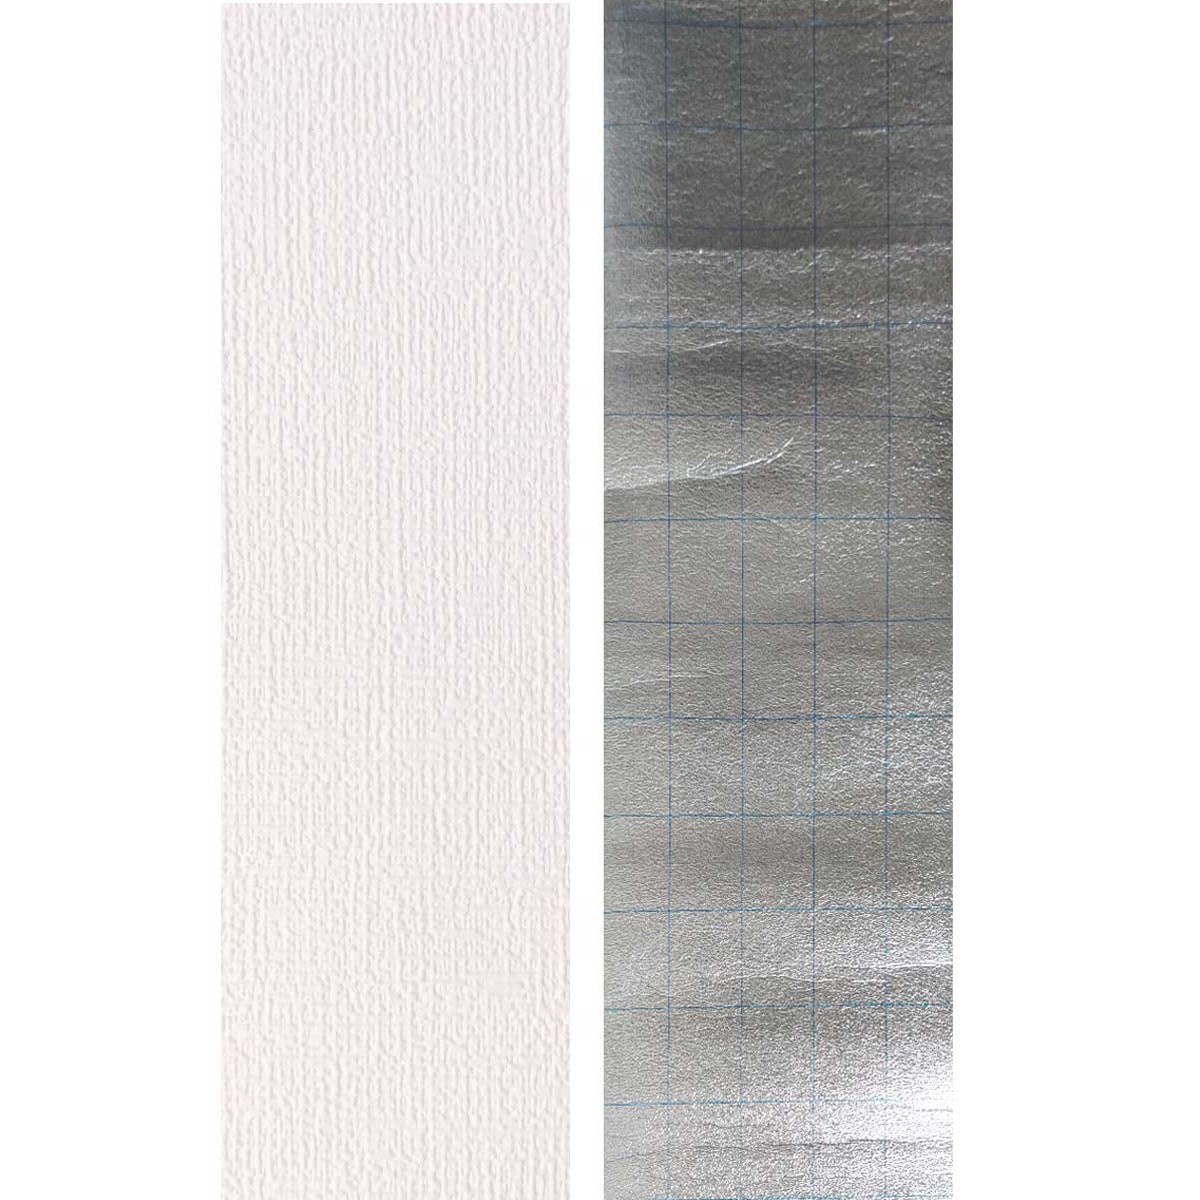 Текстурные самоклеющиеся обои белые YM-01 500x2800x2мм. (1,4 м²/рул.) - фото 5